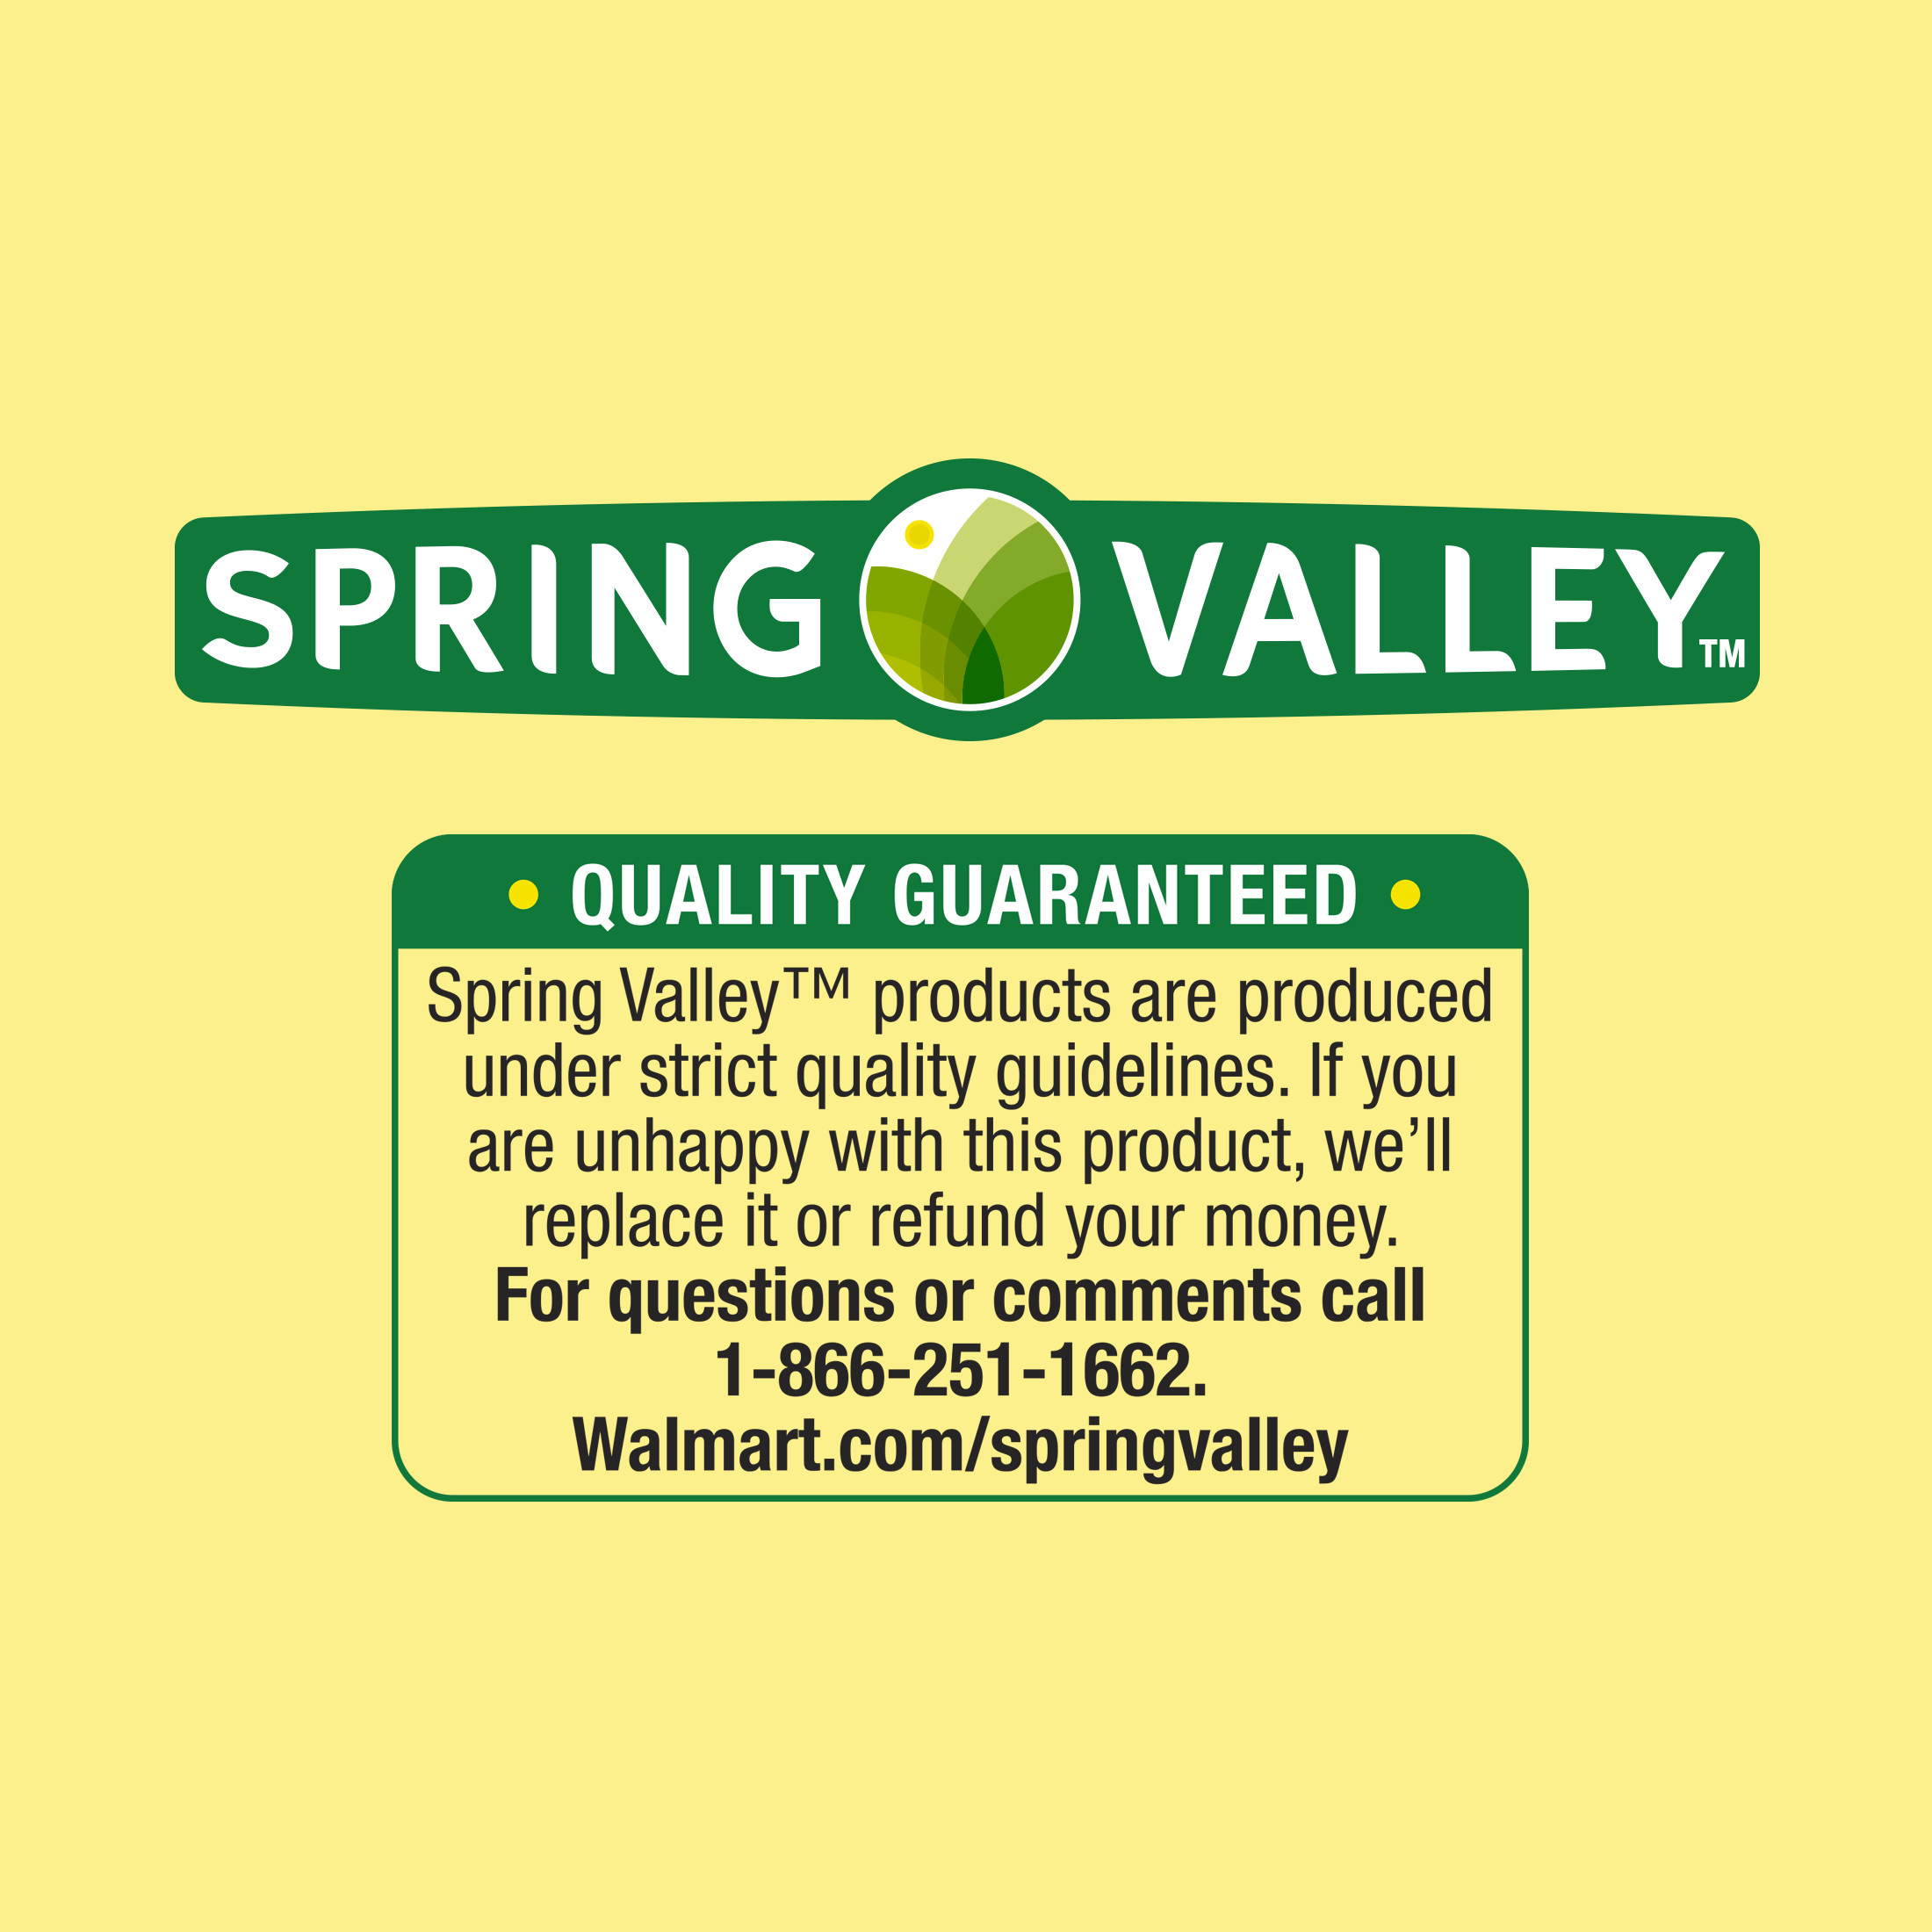 Spring Valley Vitamin E Skin Oil, 12,000 IU, 2 fl oz - image 5 of 5